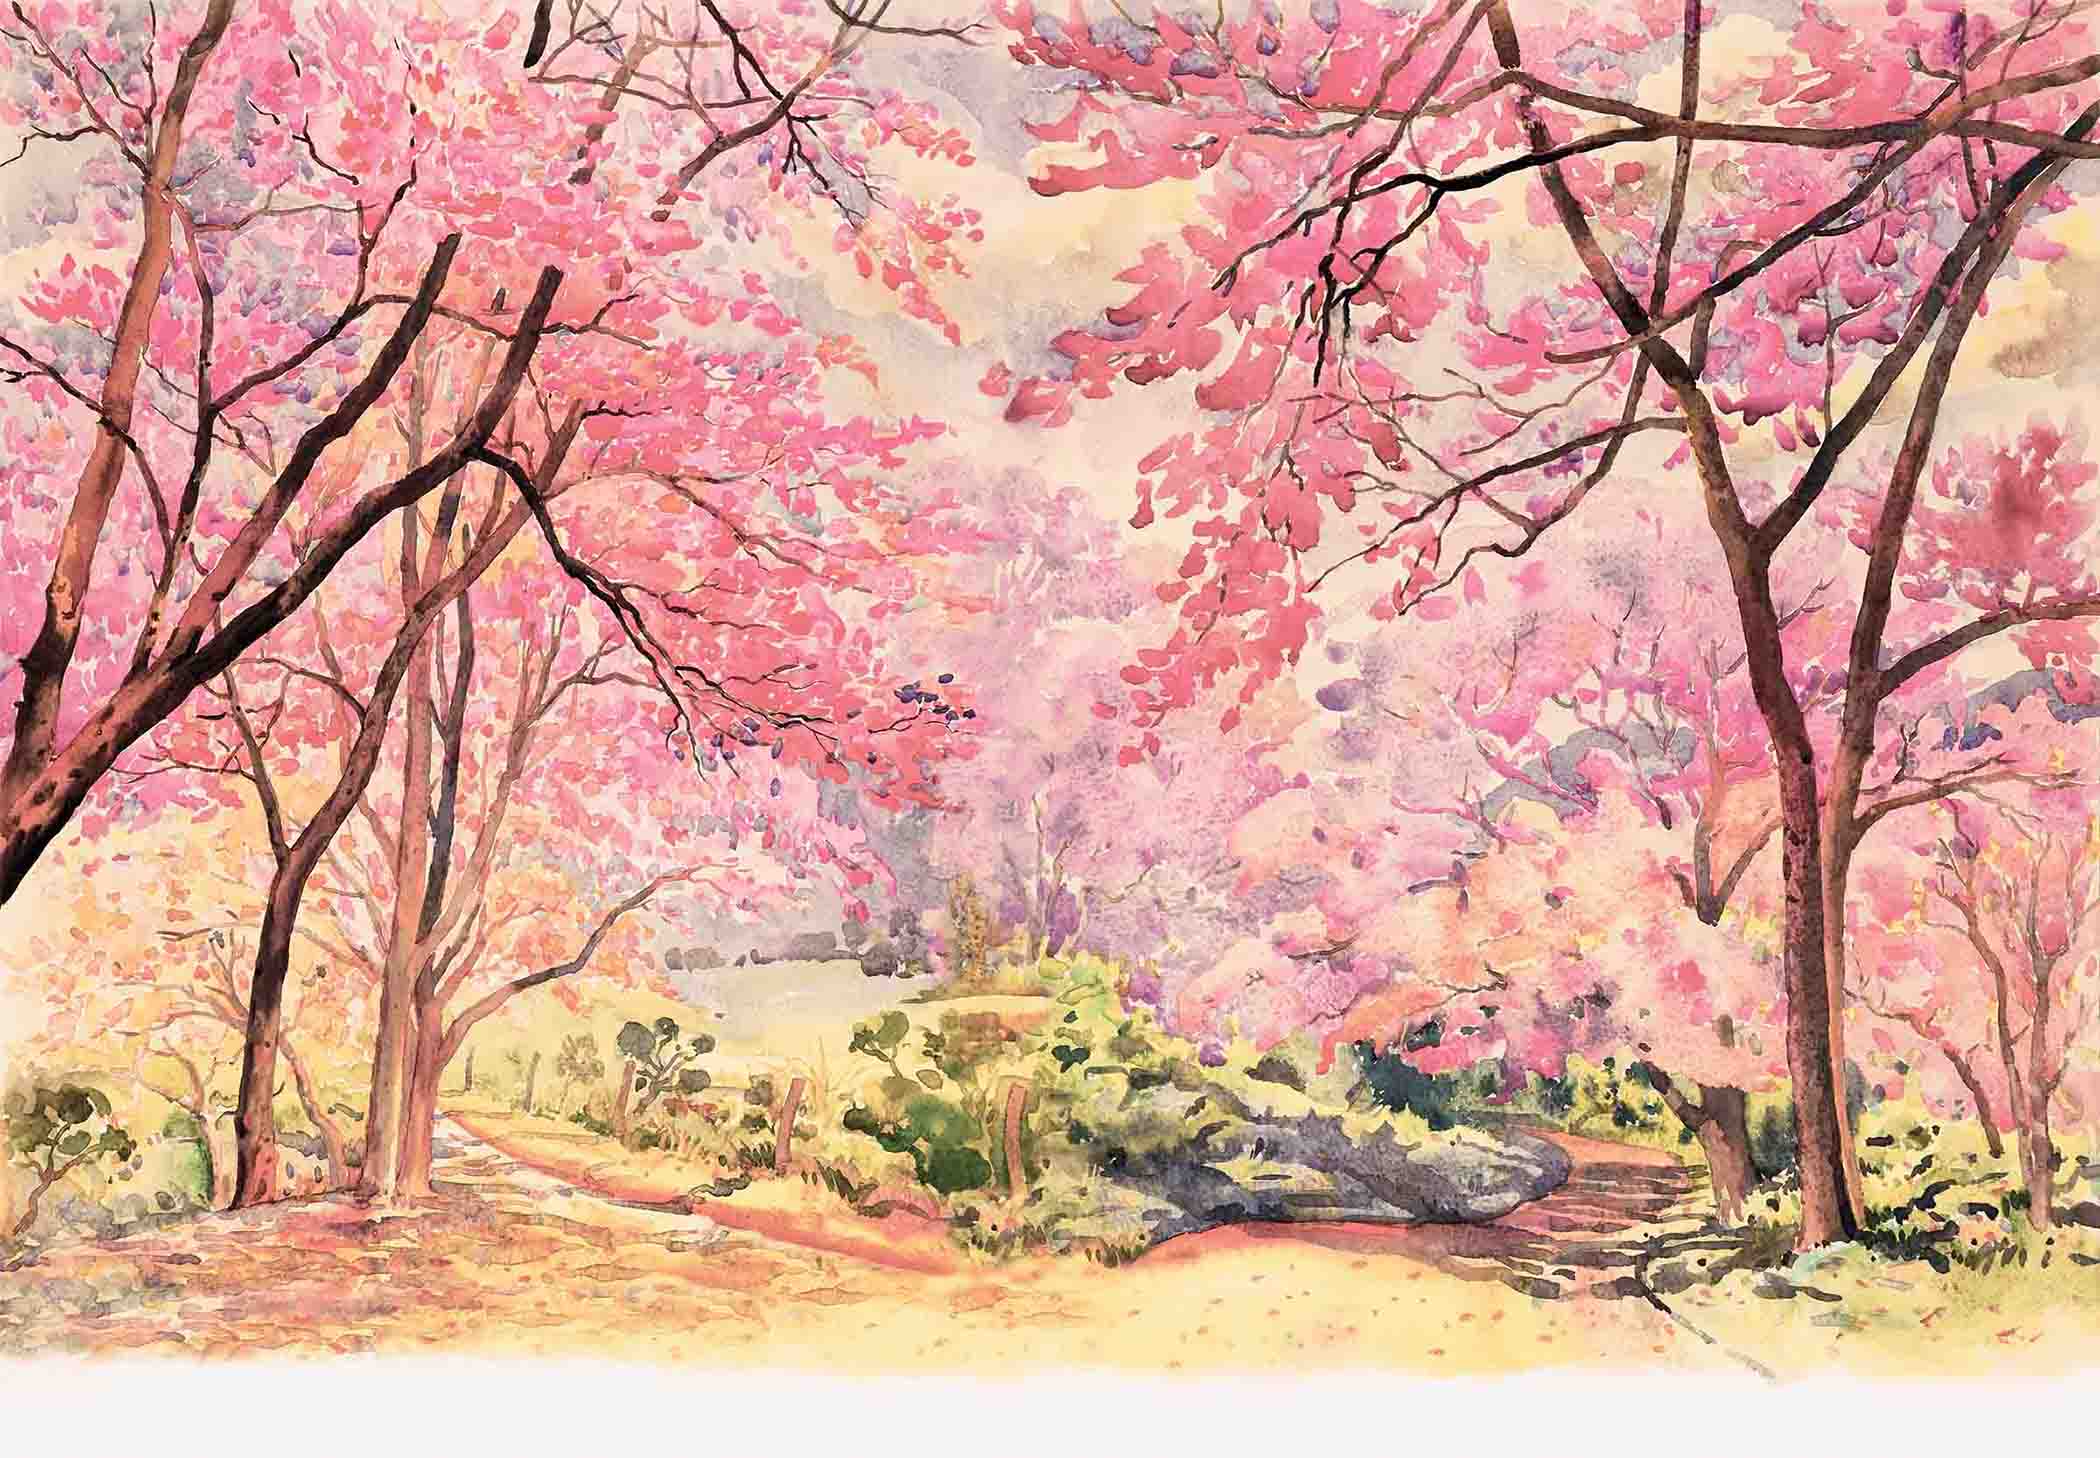 61+] Pink Nature Wallpaper - WallpaperSafari